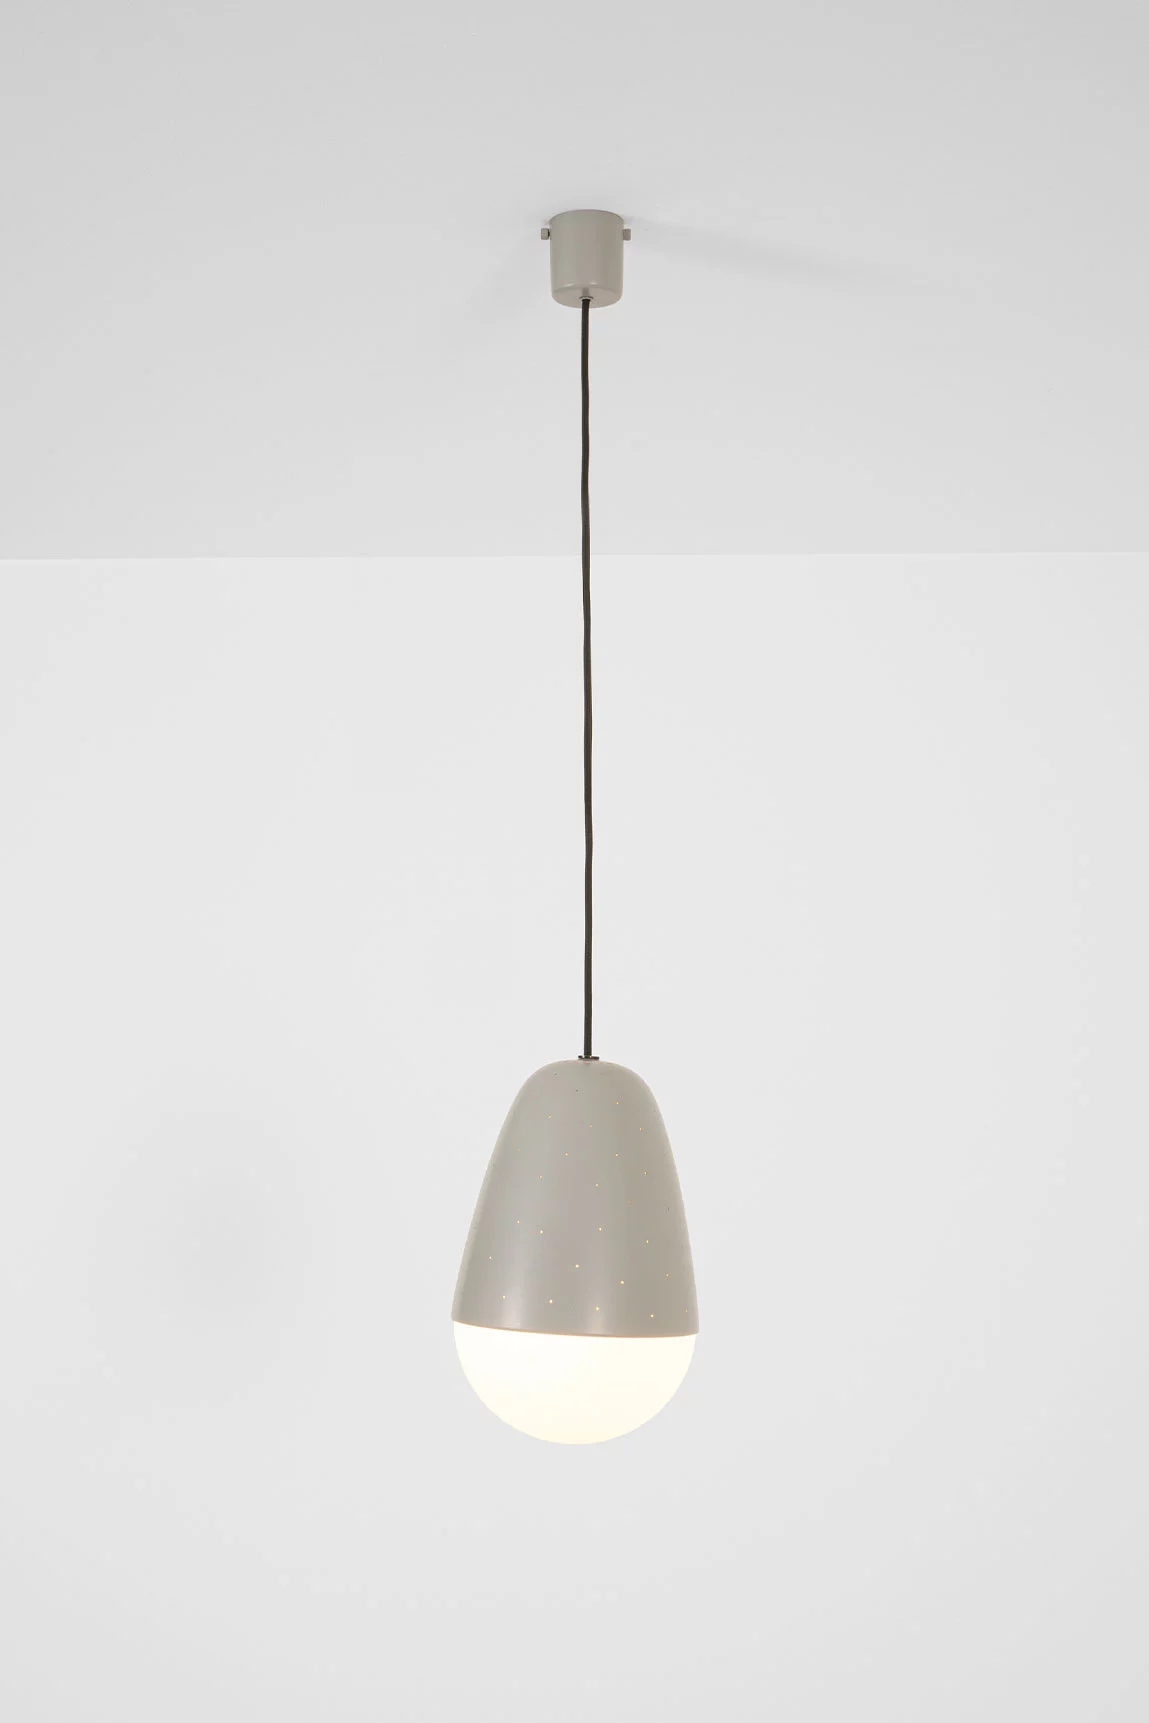 2079 - Gino Sarfatti - Pendant light - Galerie kreo